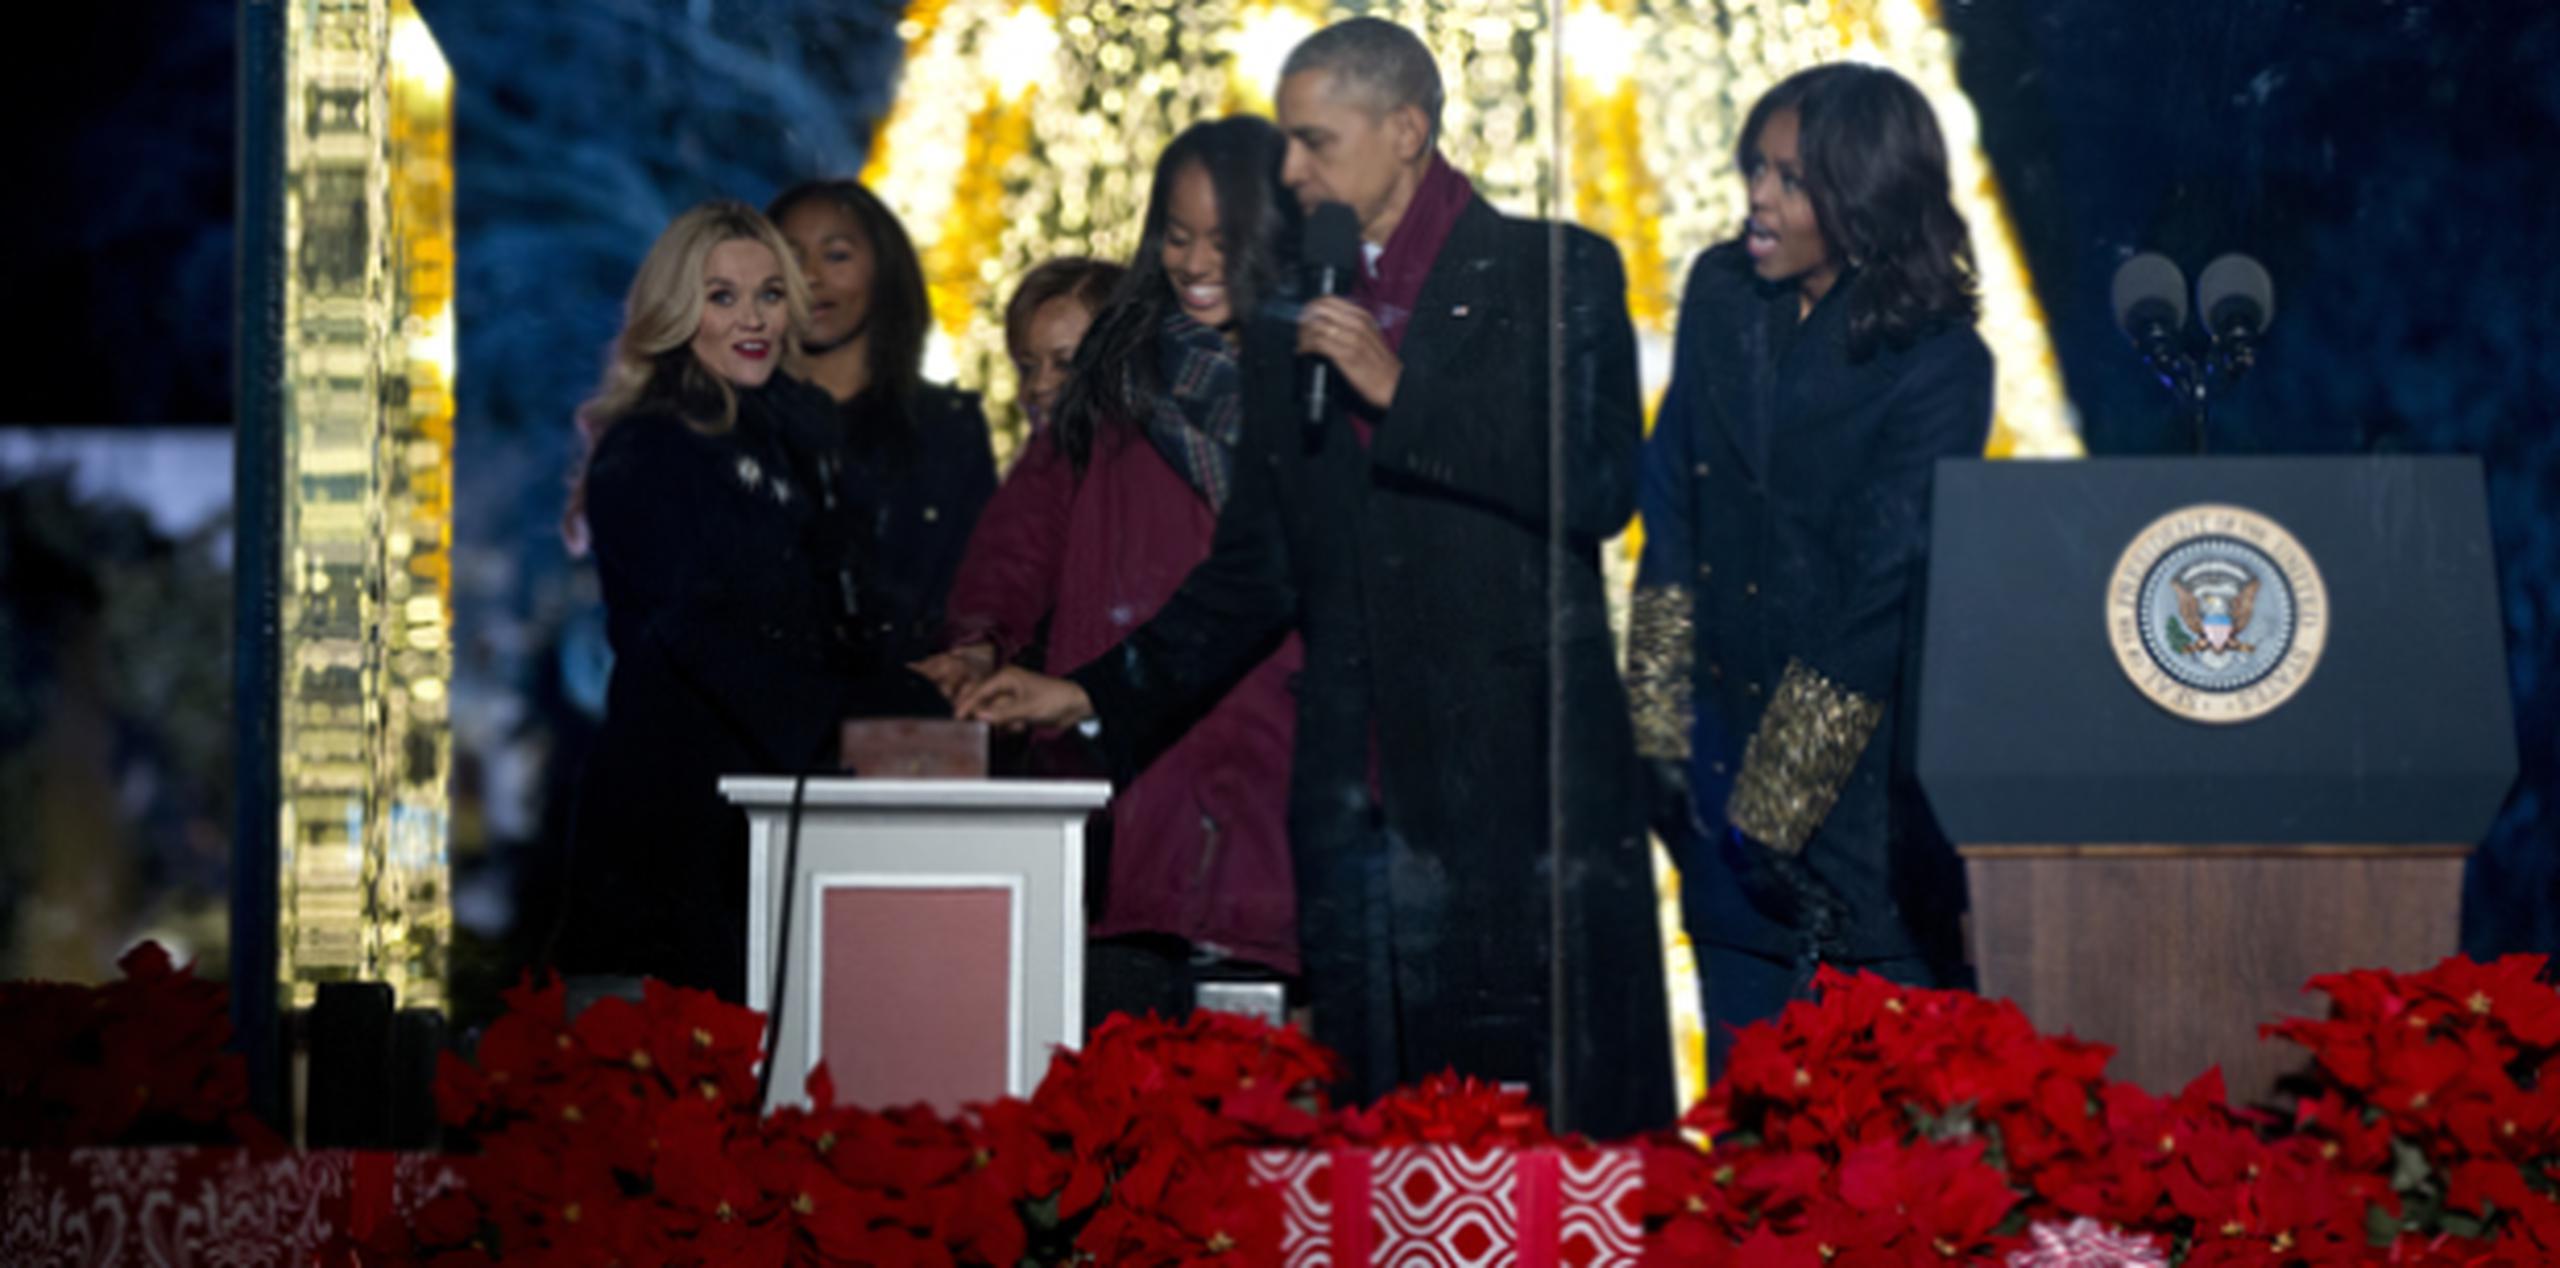 La actriz Reese Witherspoon acompaña a Sasha Obama, Marian Robinson, Malia Obama, el presidente Barack Obama y la primera dama Michelle Obama tras encender el árbol de la Casa Blanca. (AP)
